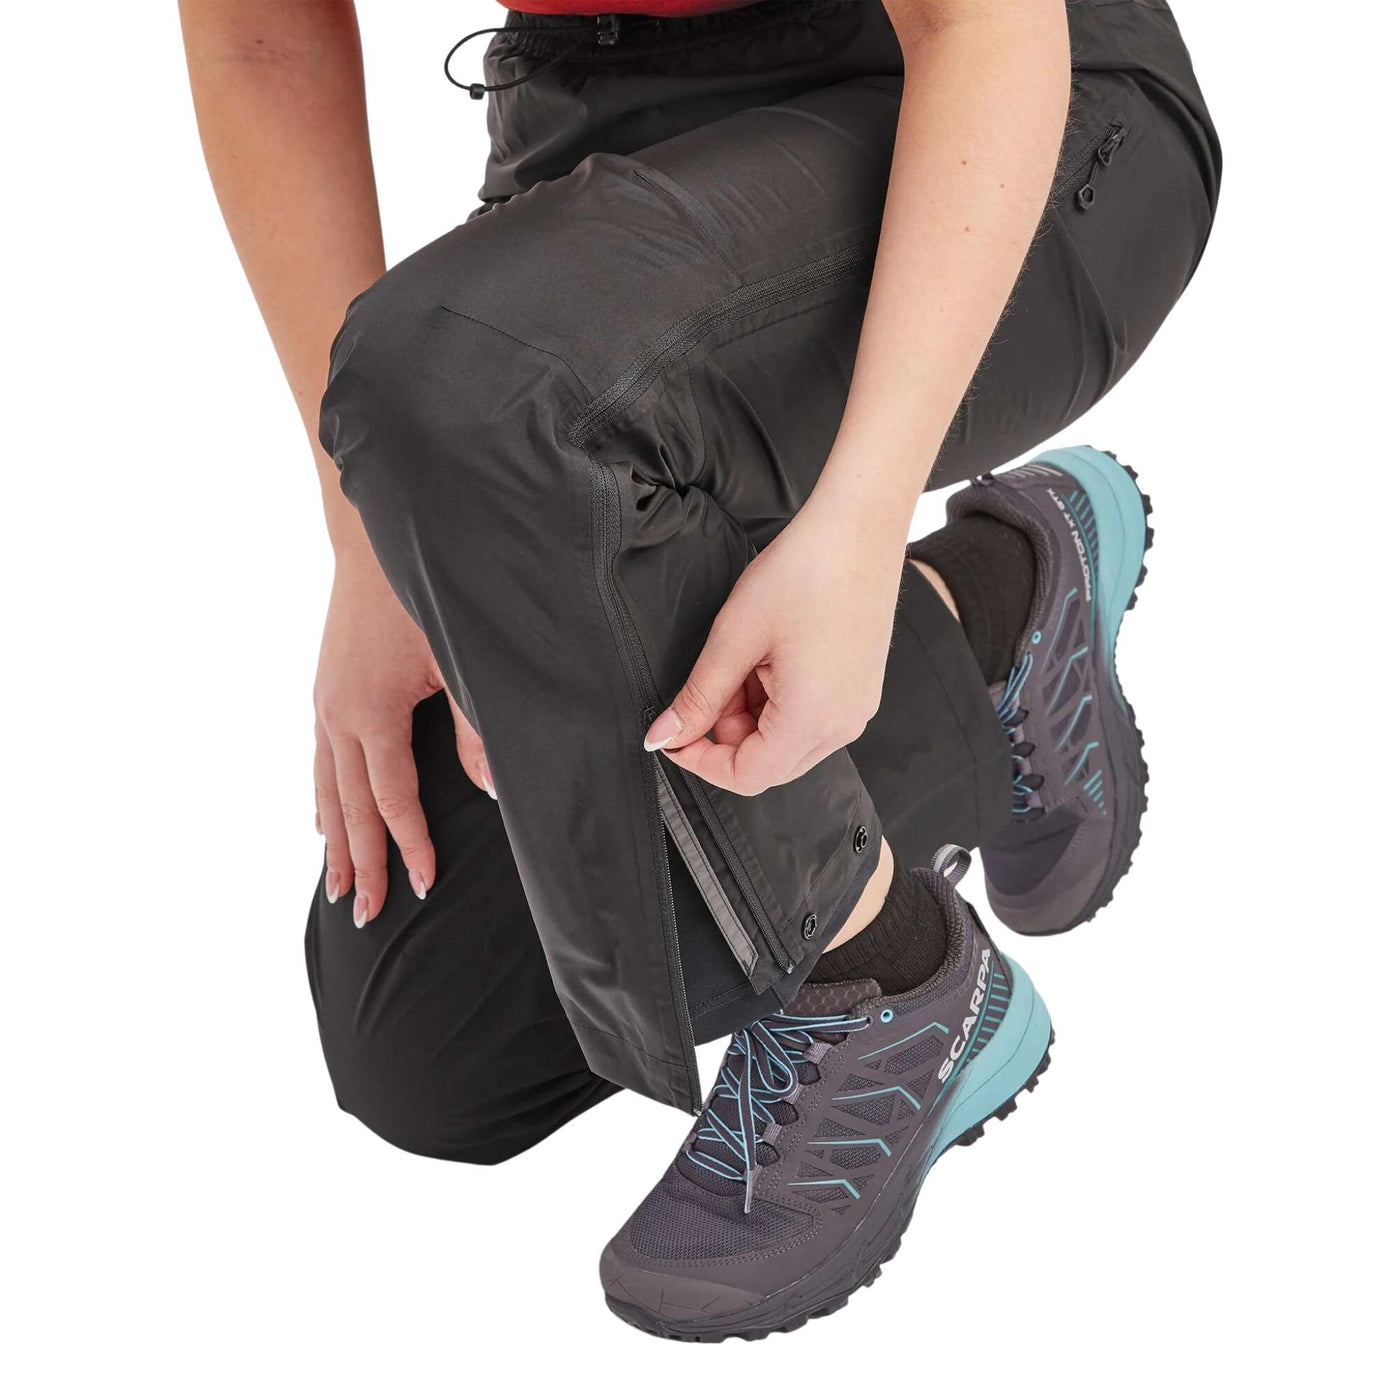 Women's waterproof hiking trousers - short legs